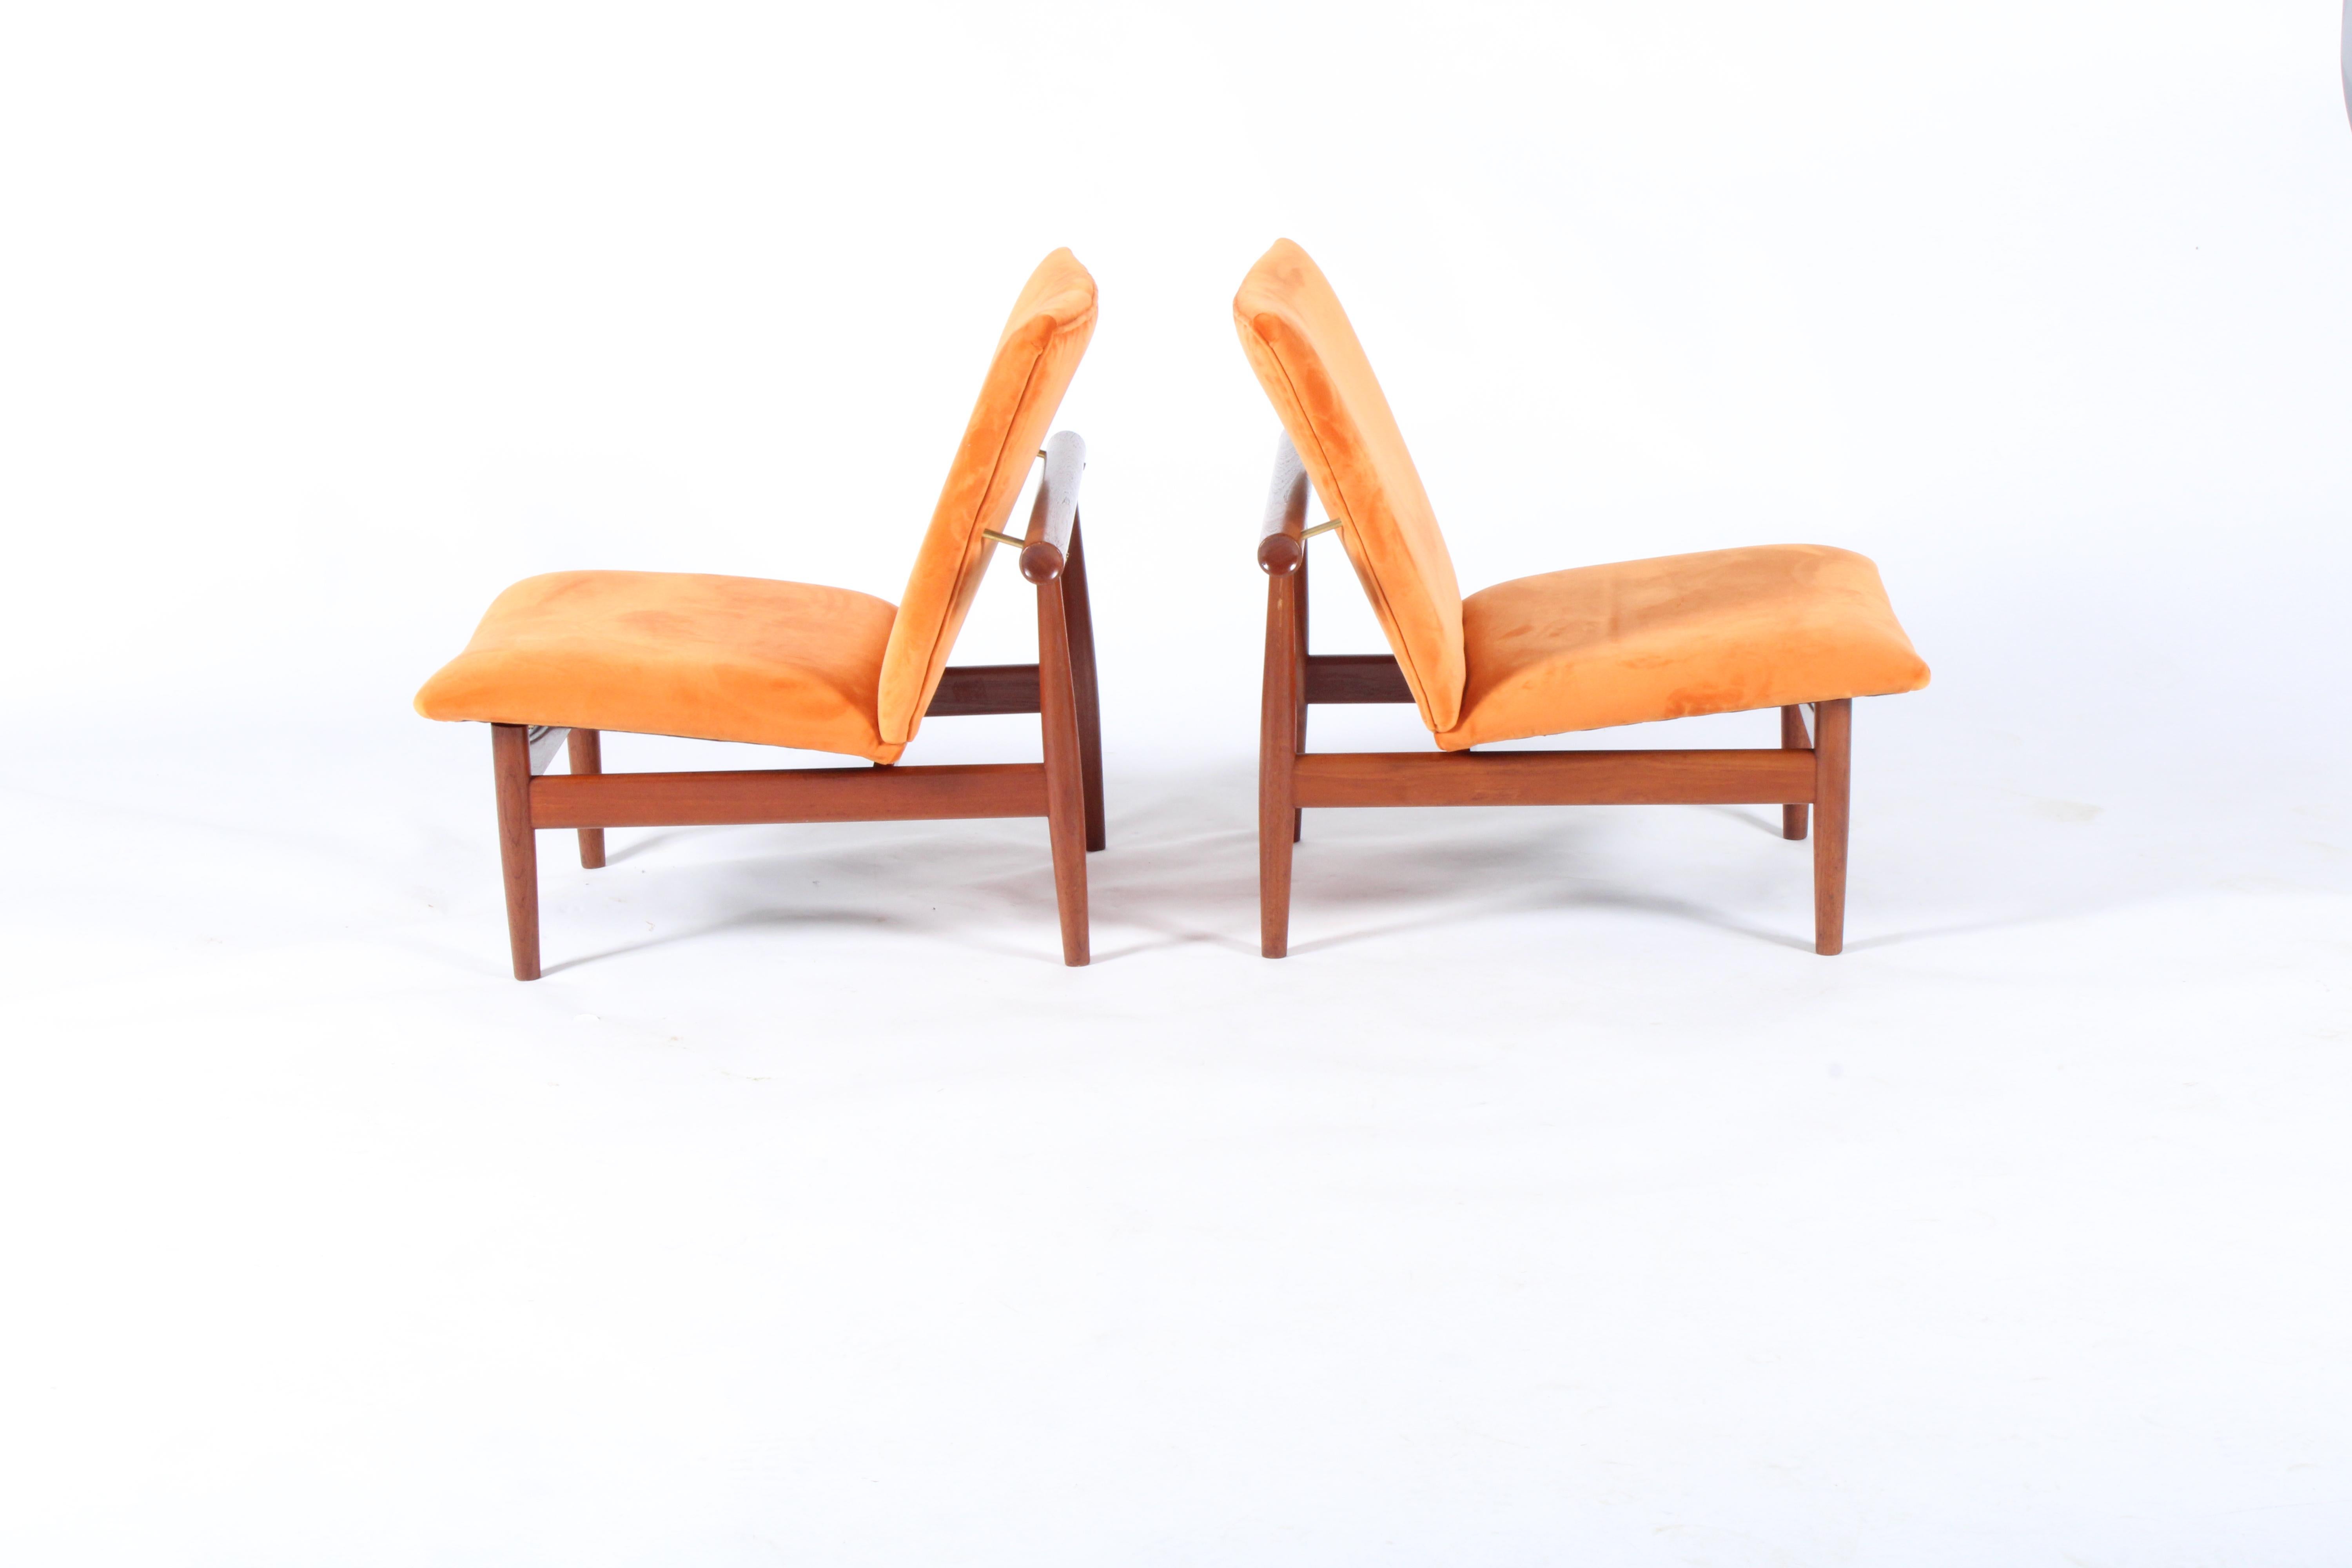 Pair of Iconic Danish Design Japan Chairs by Finn Juhl for France & Daverkosen 3